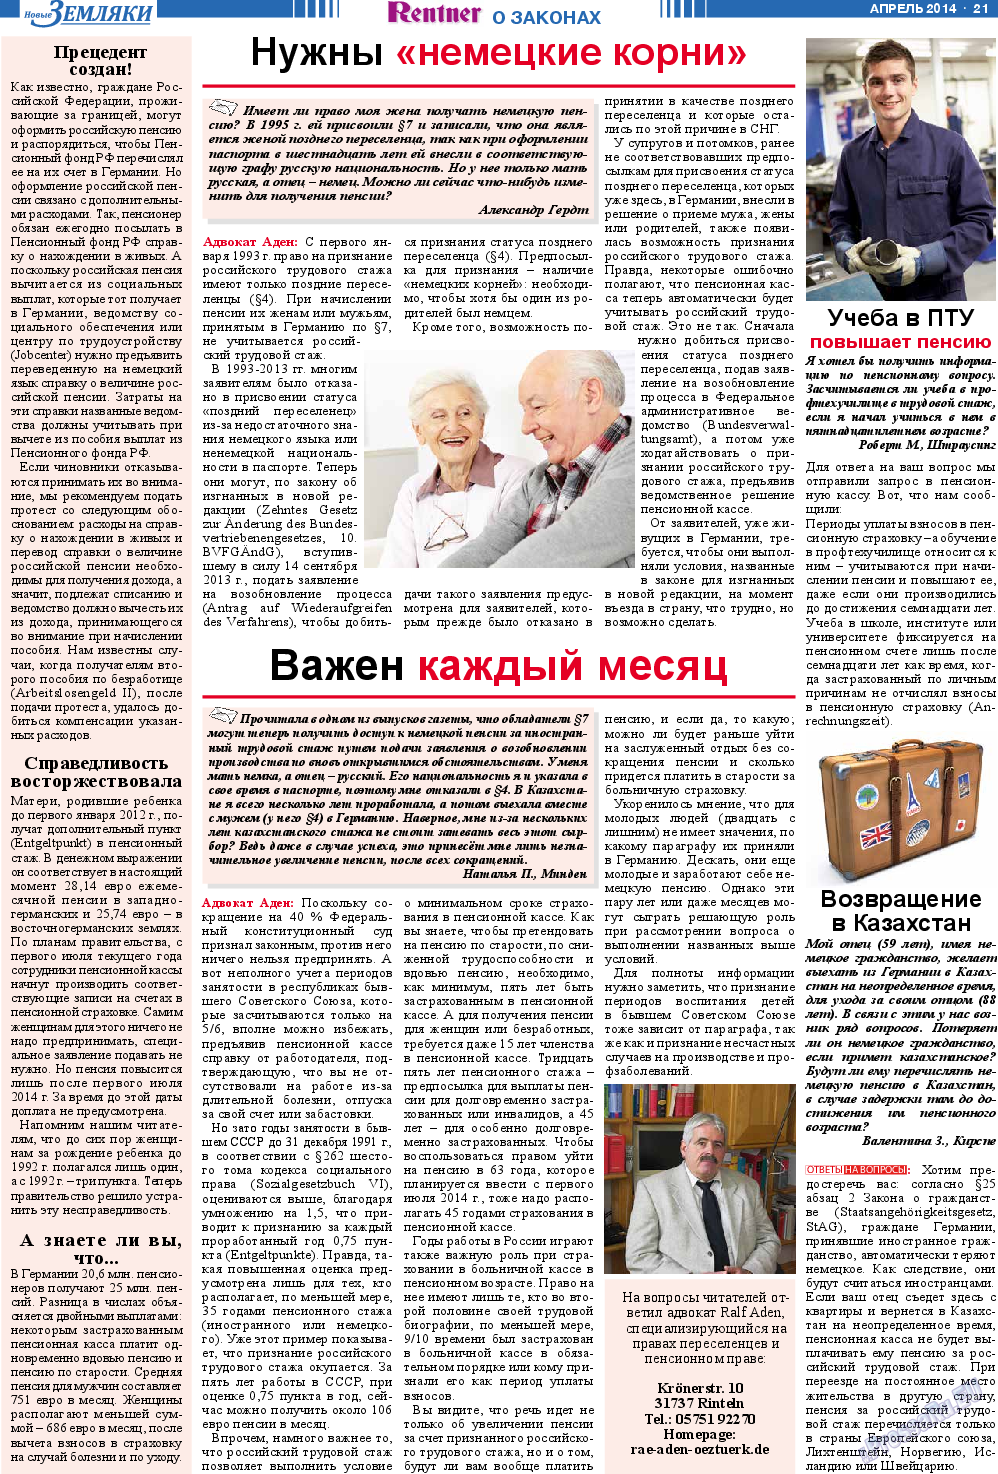 Новые Земляки (газета). 2014 год, номер 4, стр. 21